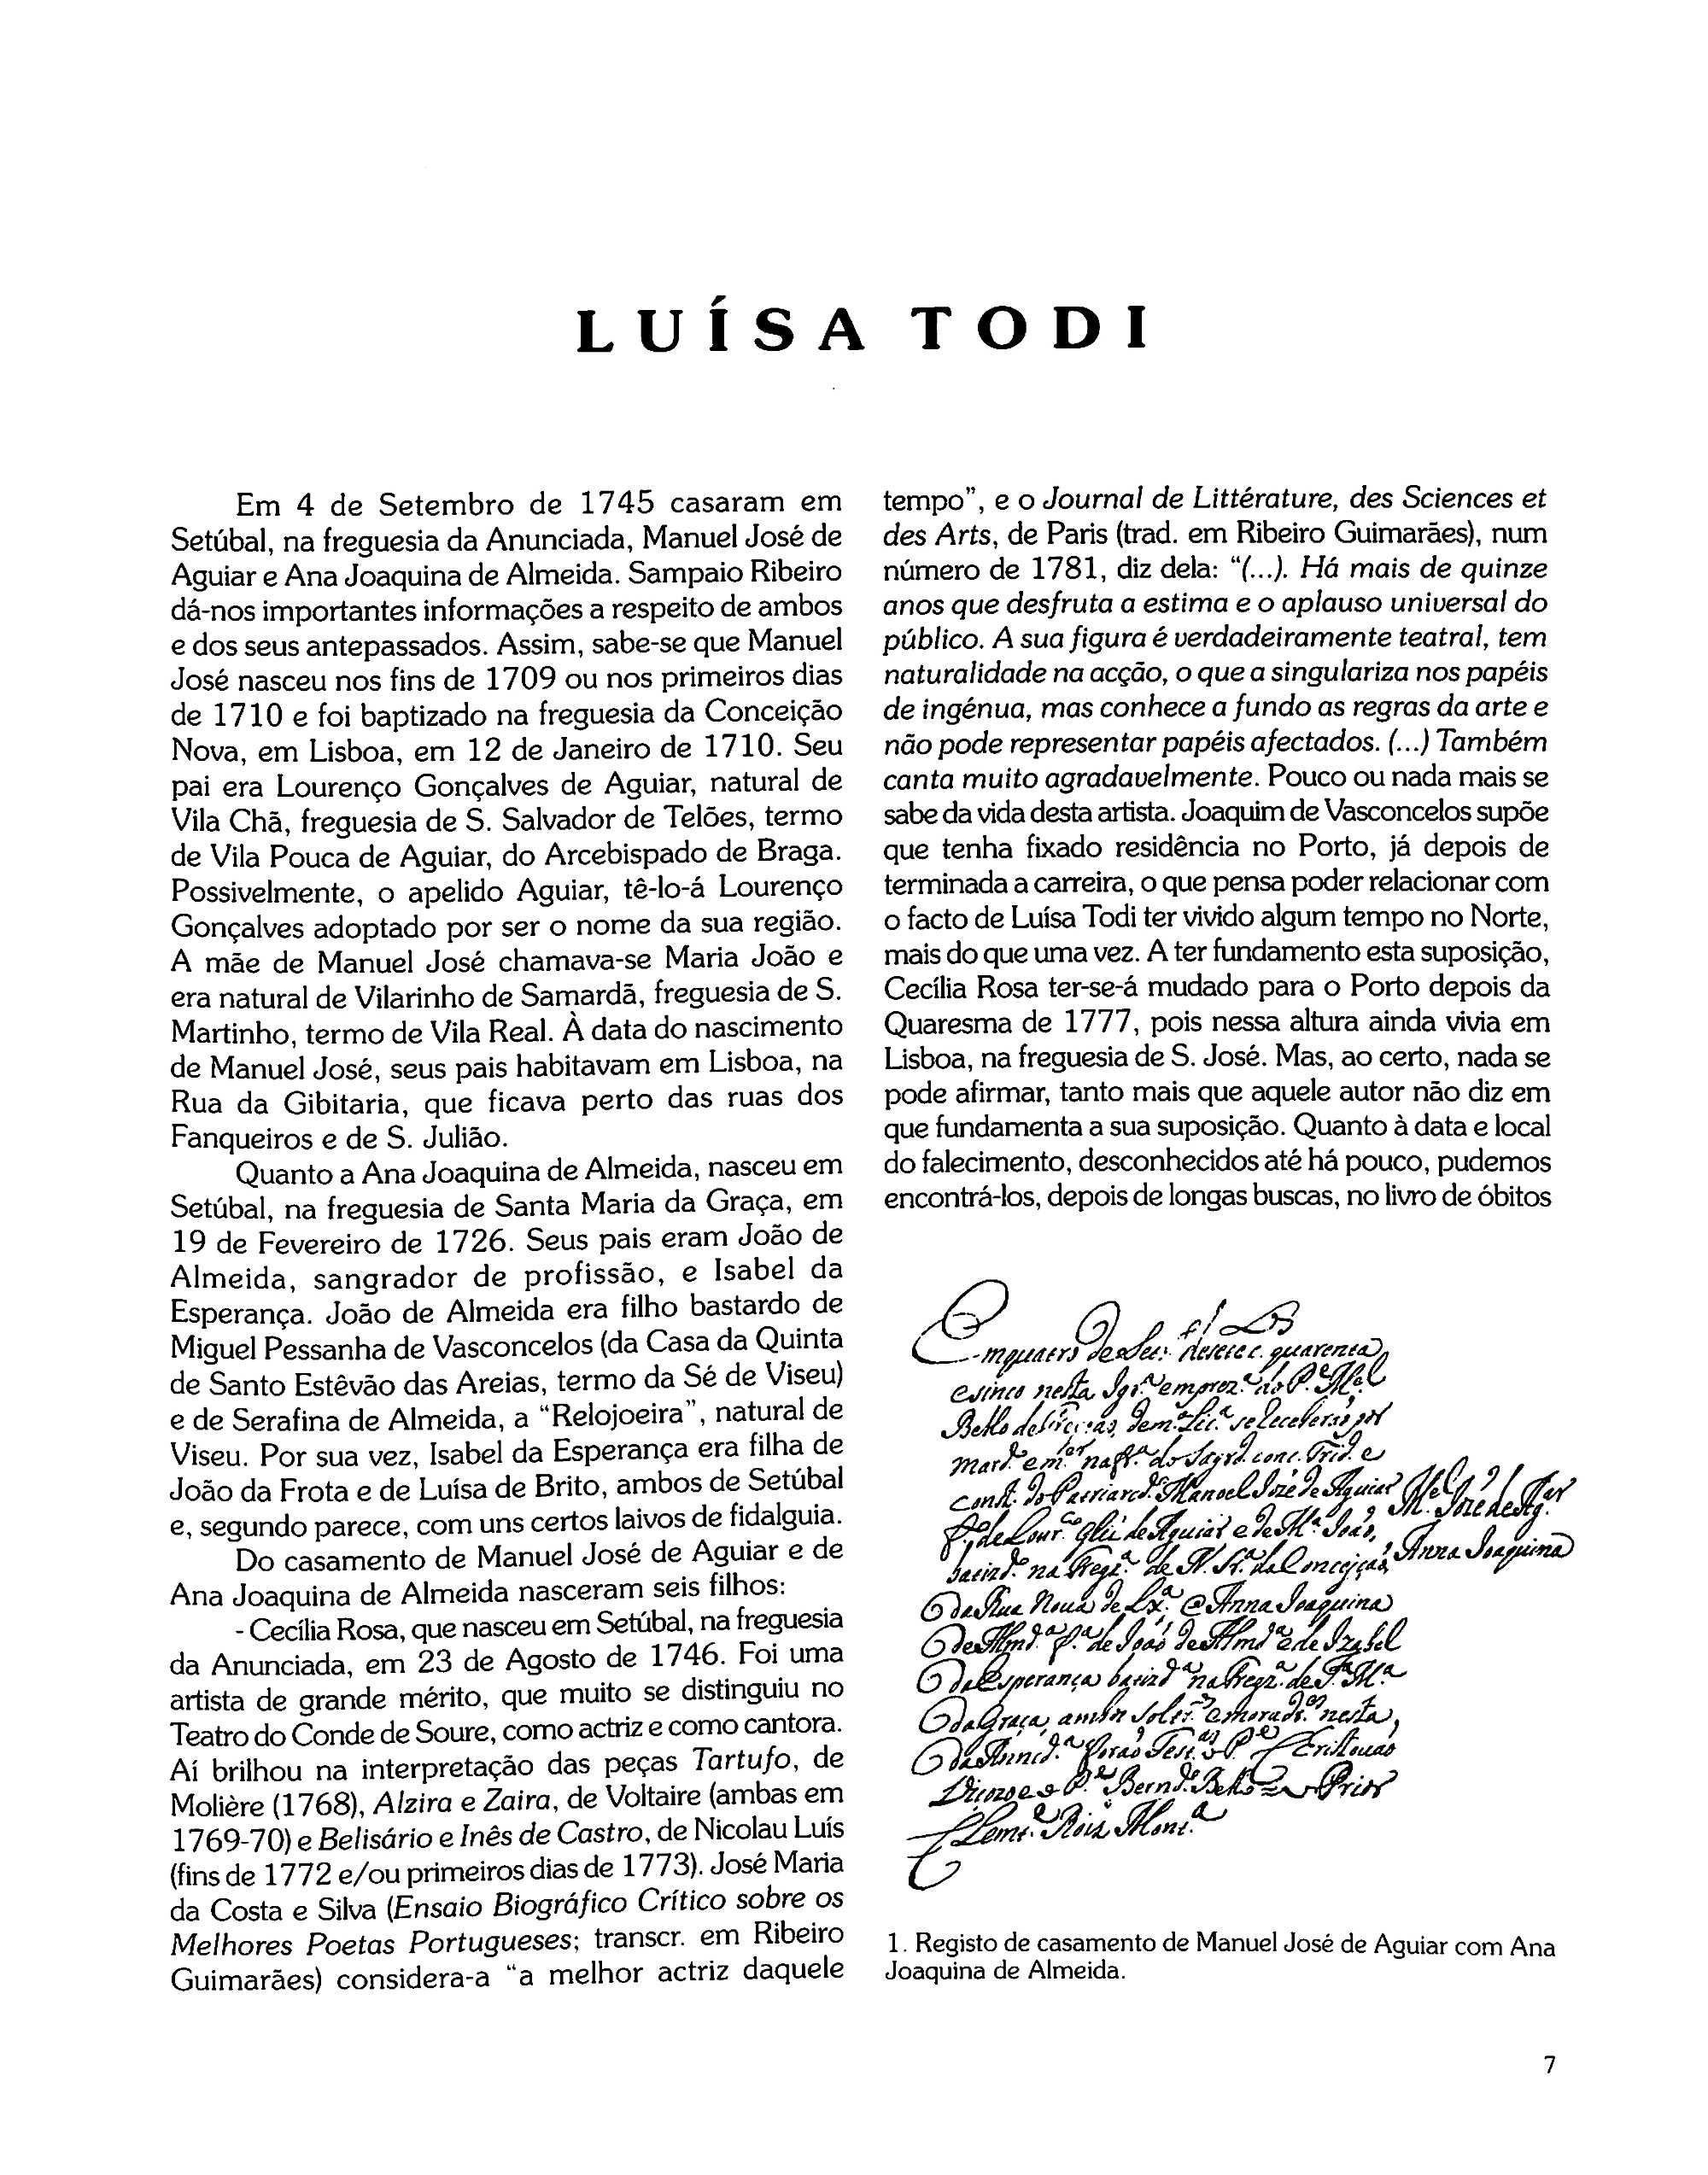 "Luísa Todi. Edição Comemorativa..." de Mário Moreau [Novo]